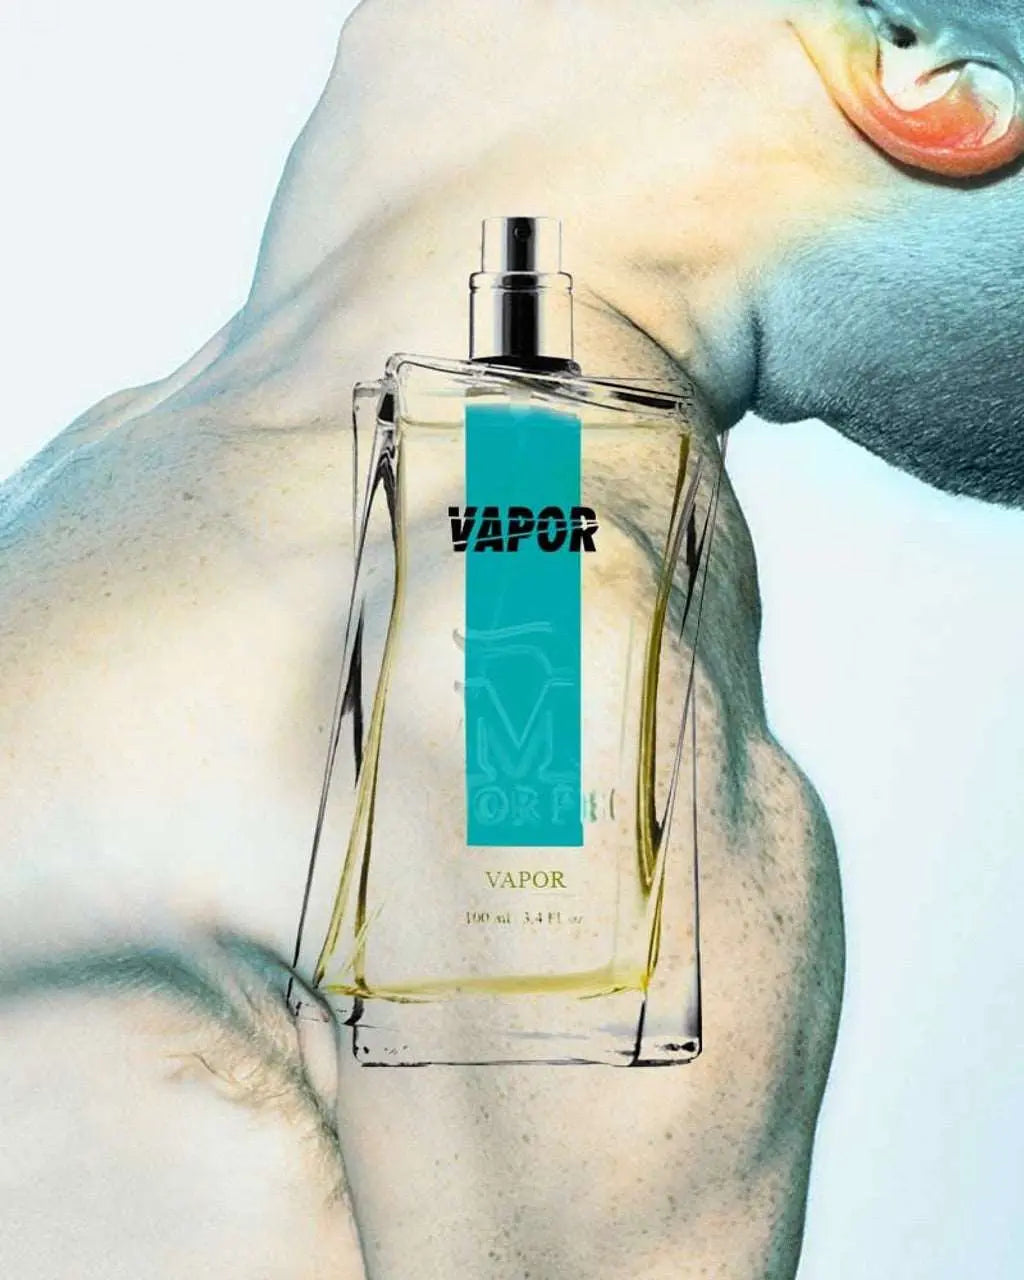 sfeerfoto morph vapor studio aromatic